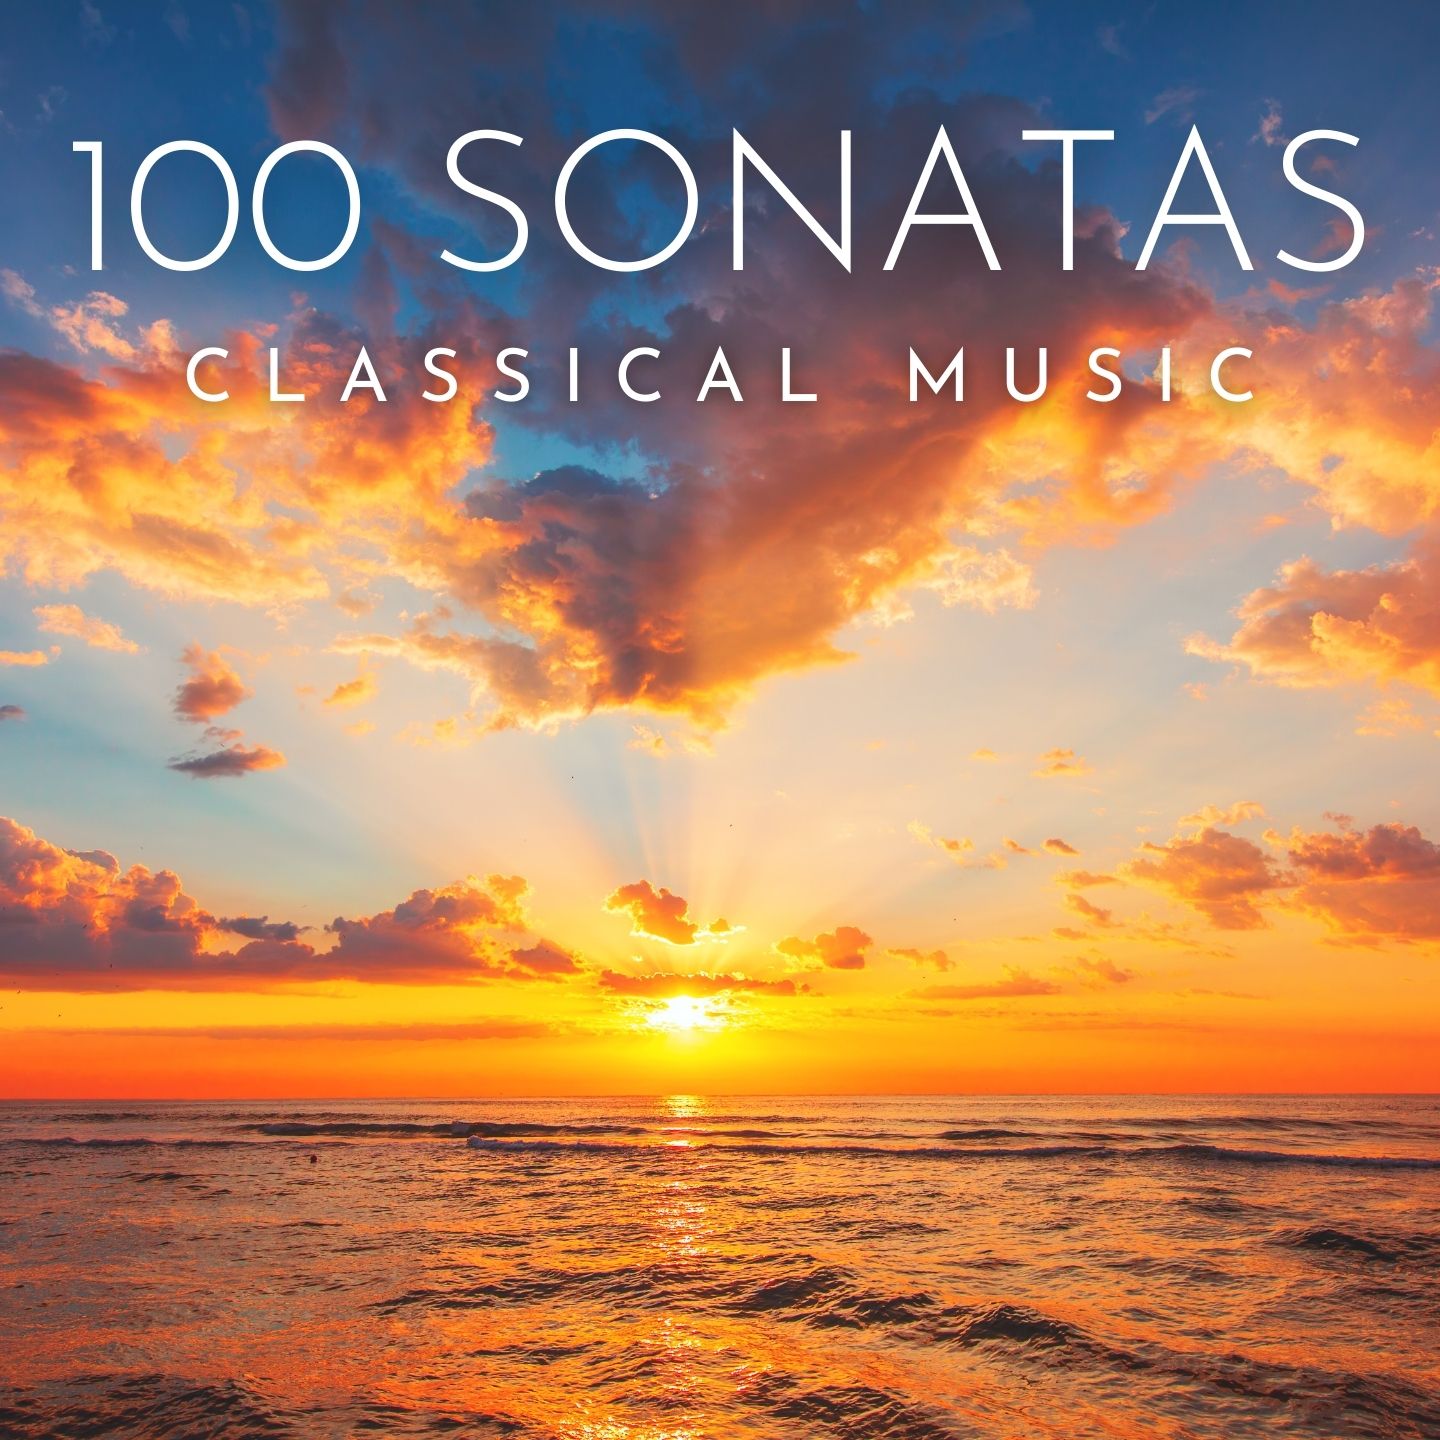 100 Sonatas